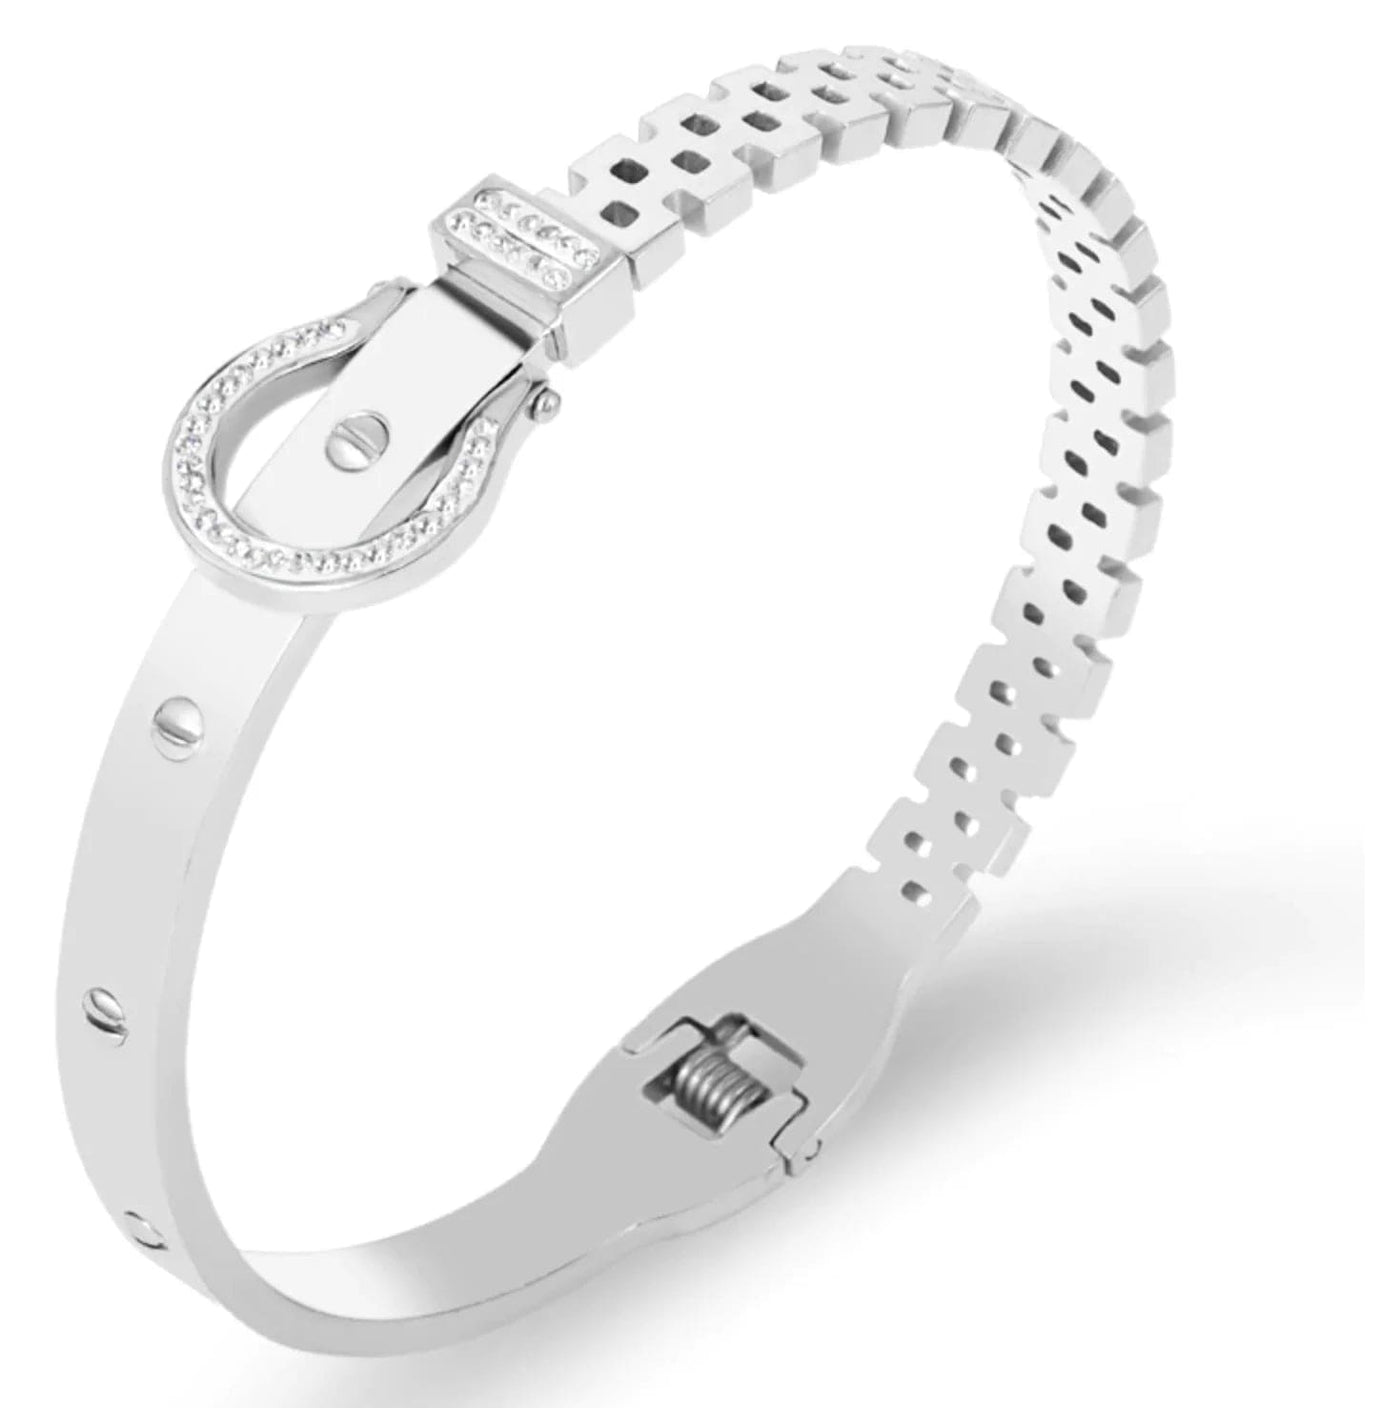 BROOCHITON Bracelets silver steel Women's Creative Diamond Hollow Bracelet: A Touch of Luxury